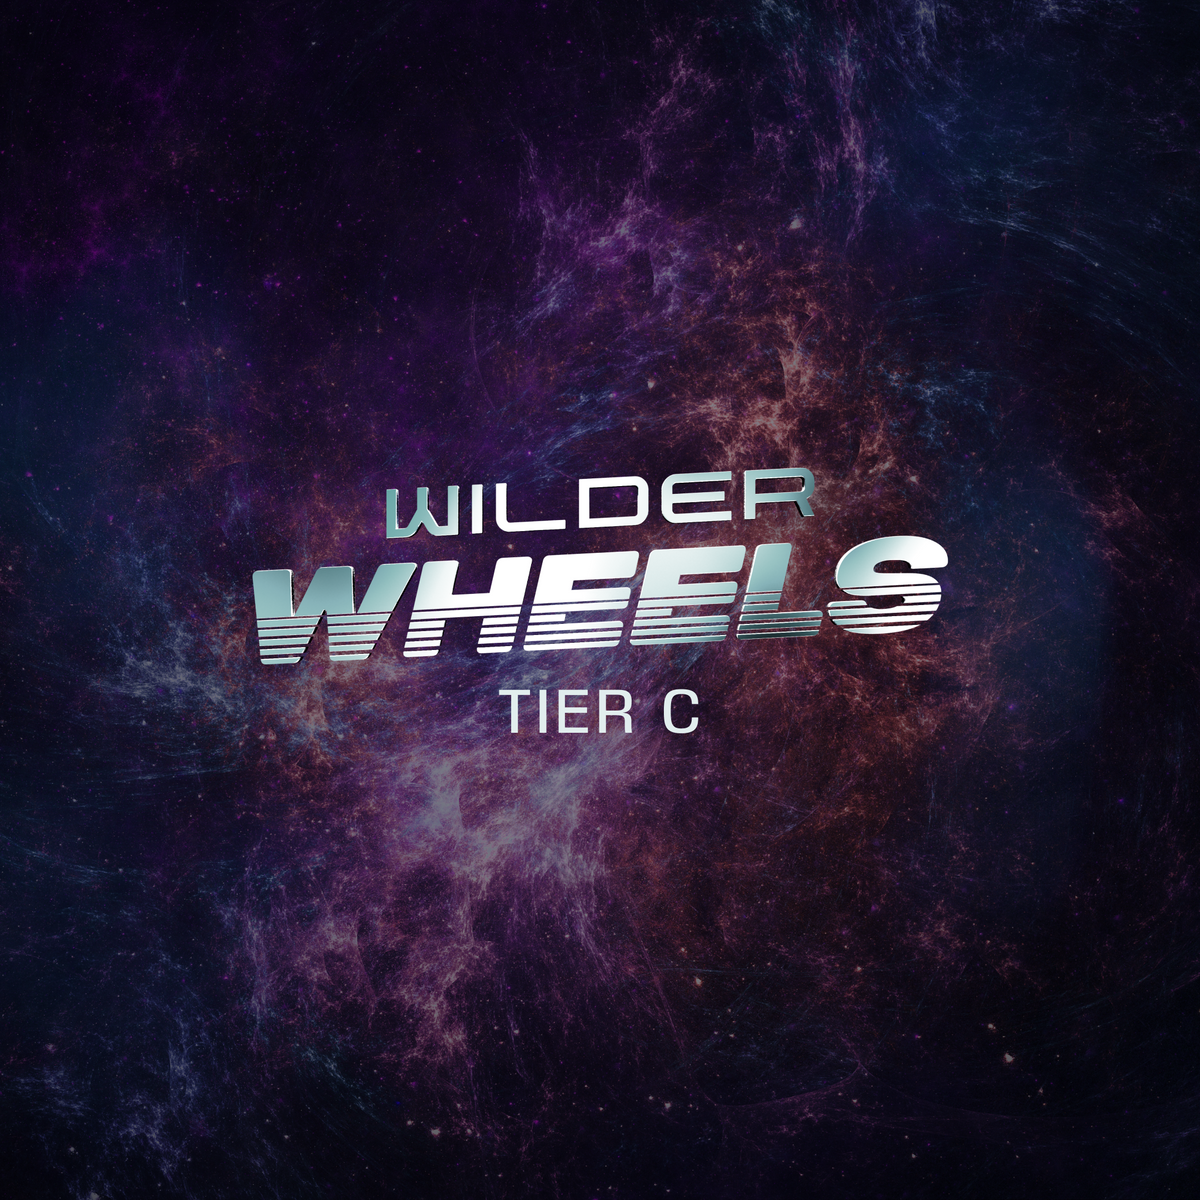 Wilder Wheels “Tier C” getting set to start their wengines